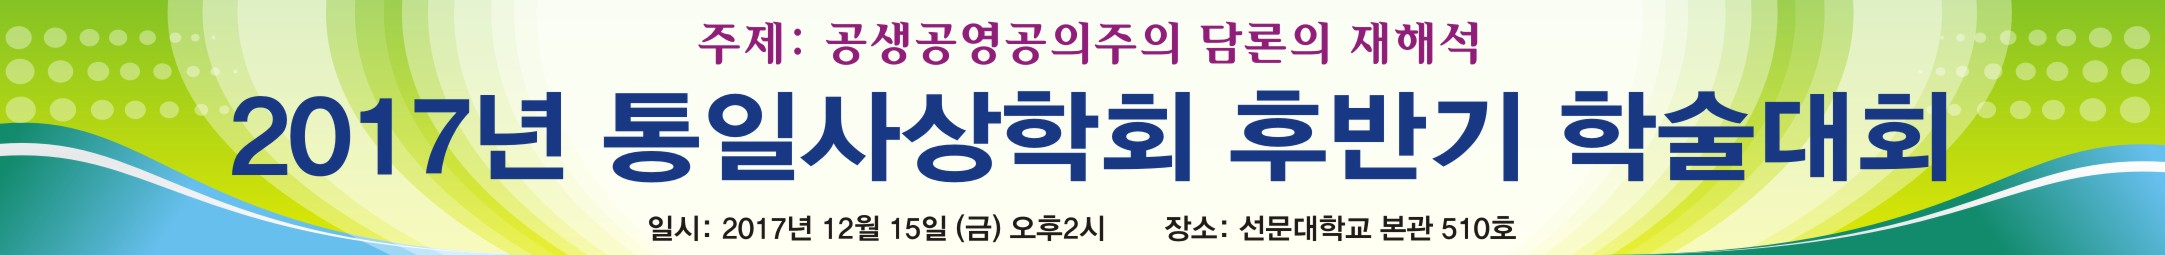 2017년 통일사상학회 후반기 학술대회 (2017.12.15. 오후2시. 선문대학교 본관 510호)